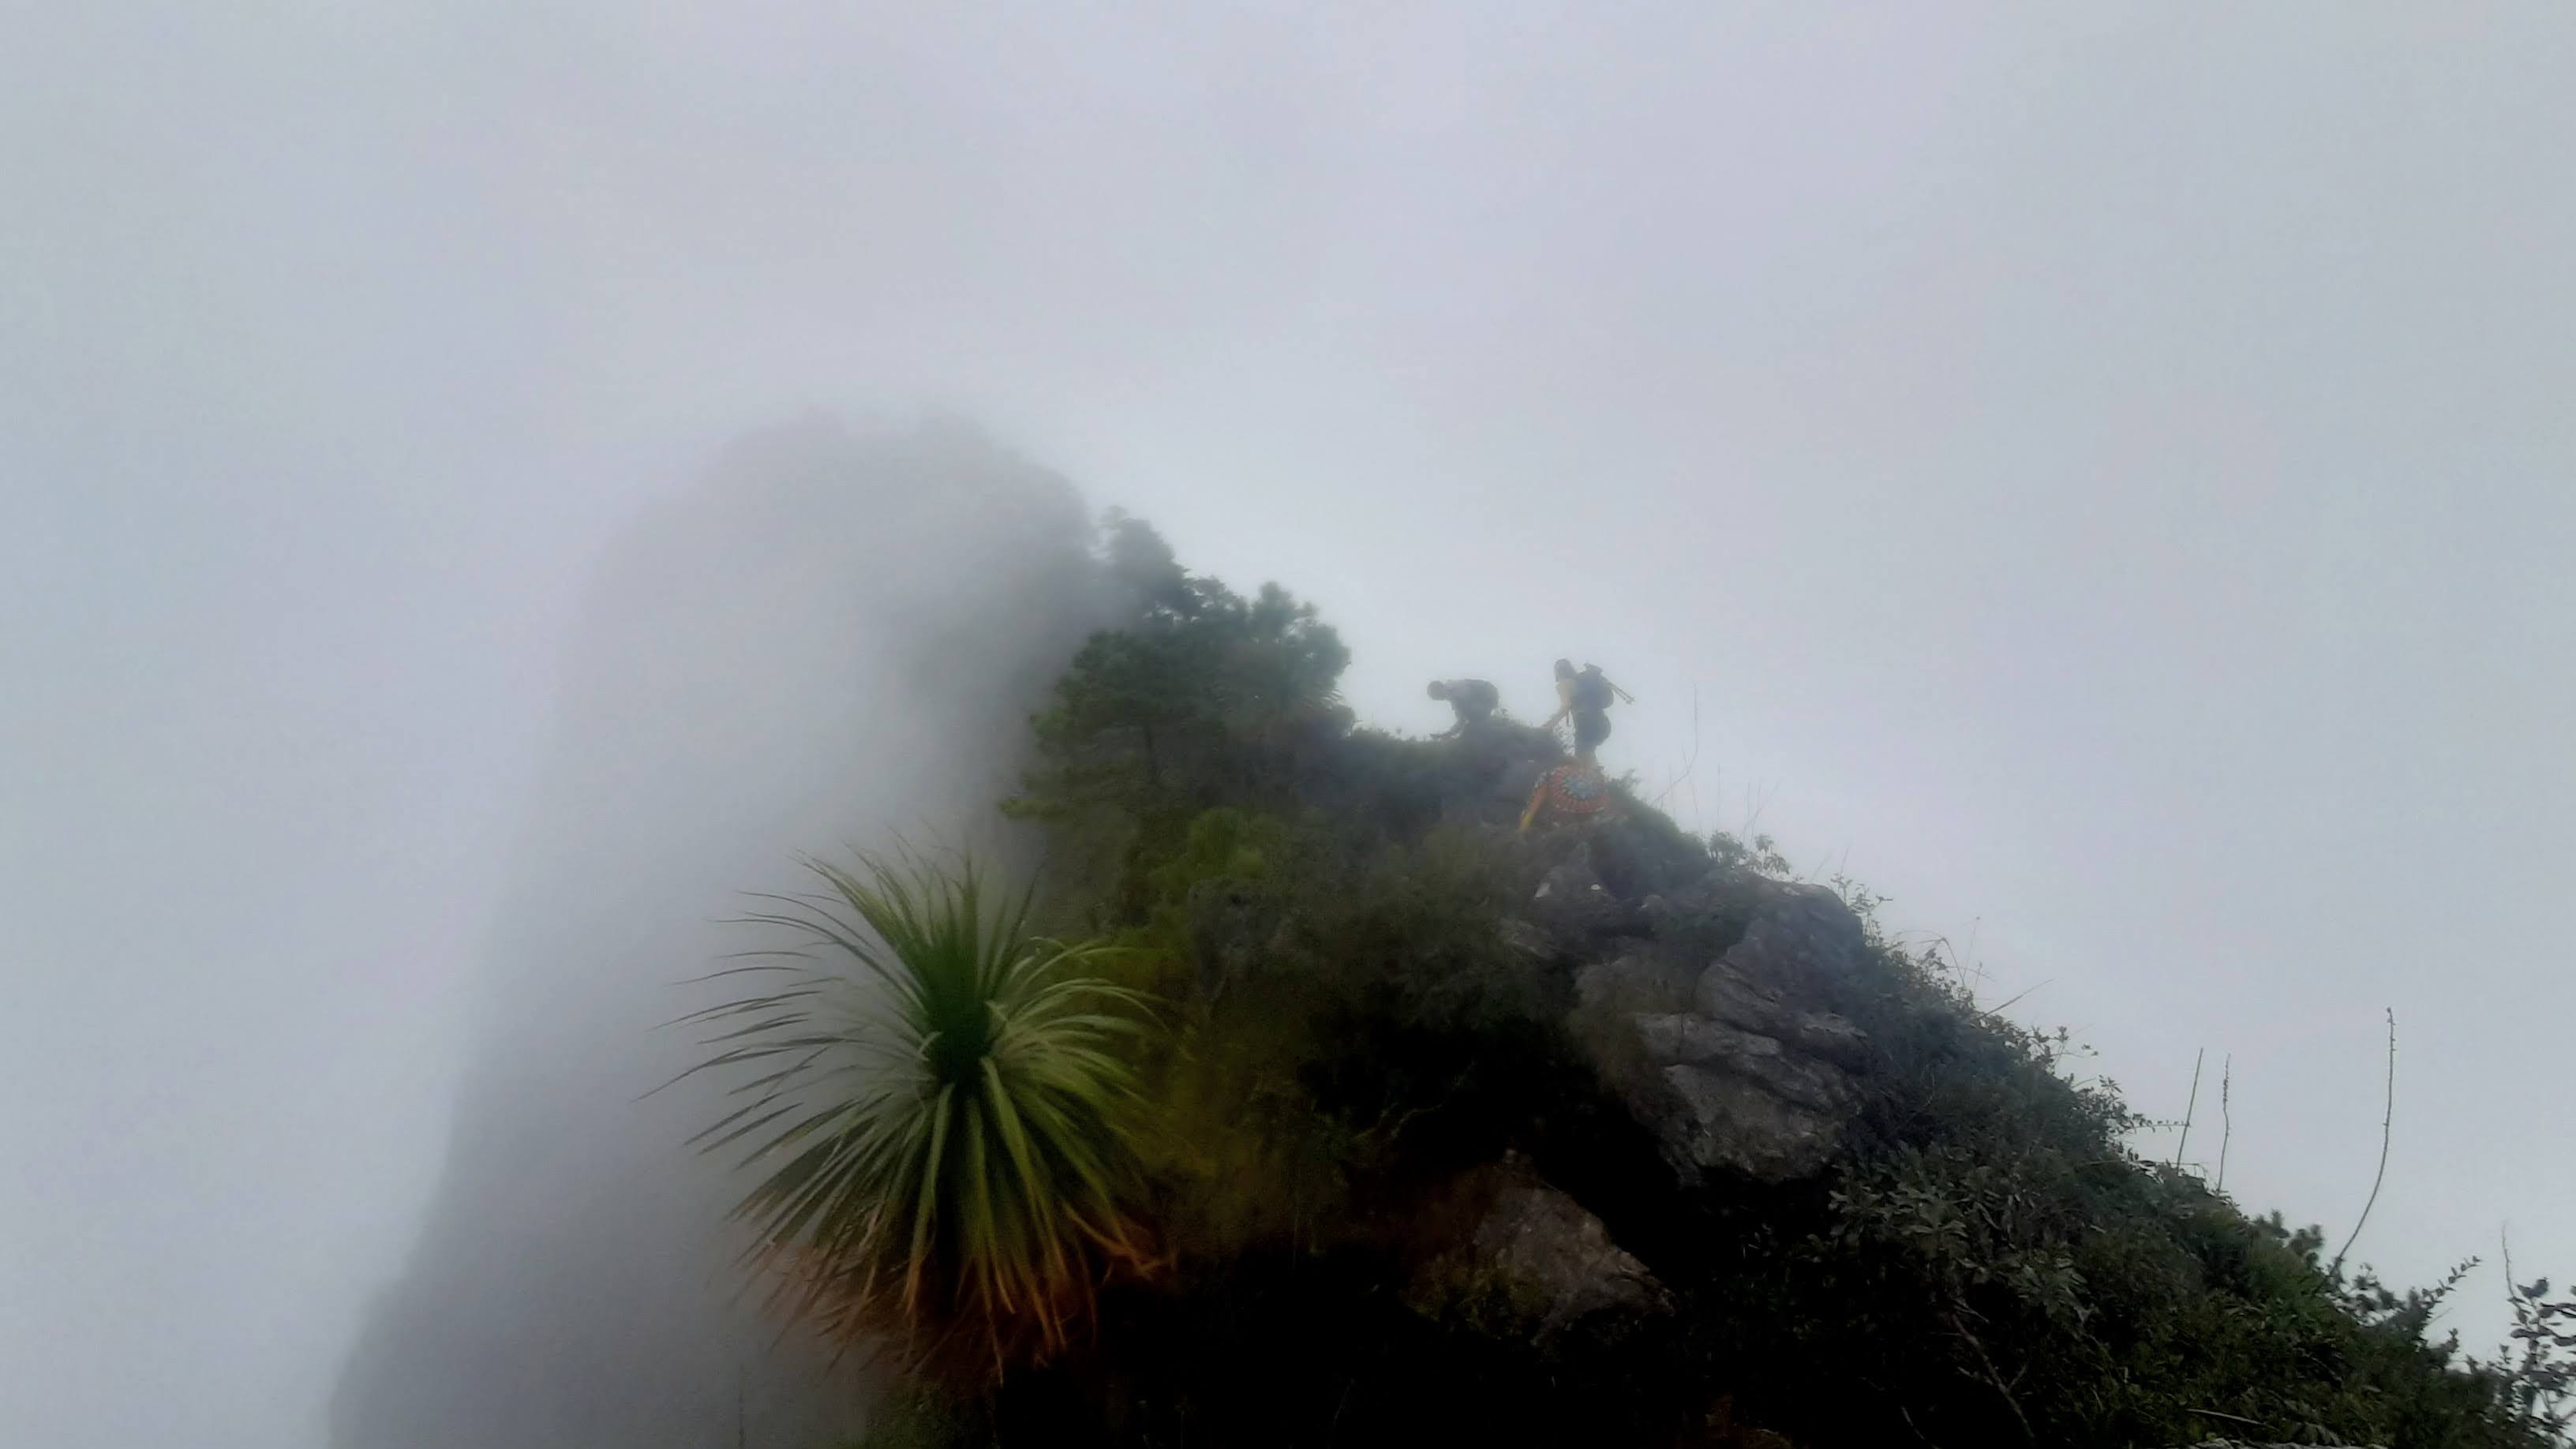 Hike Cerro de la Silleta
Xilitla